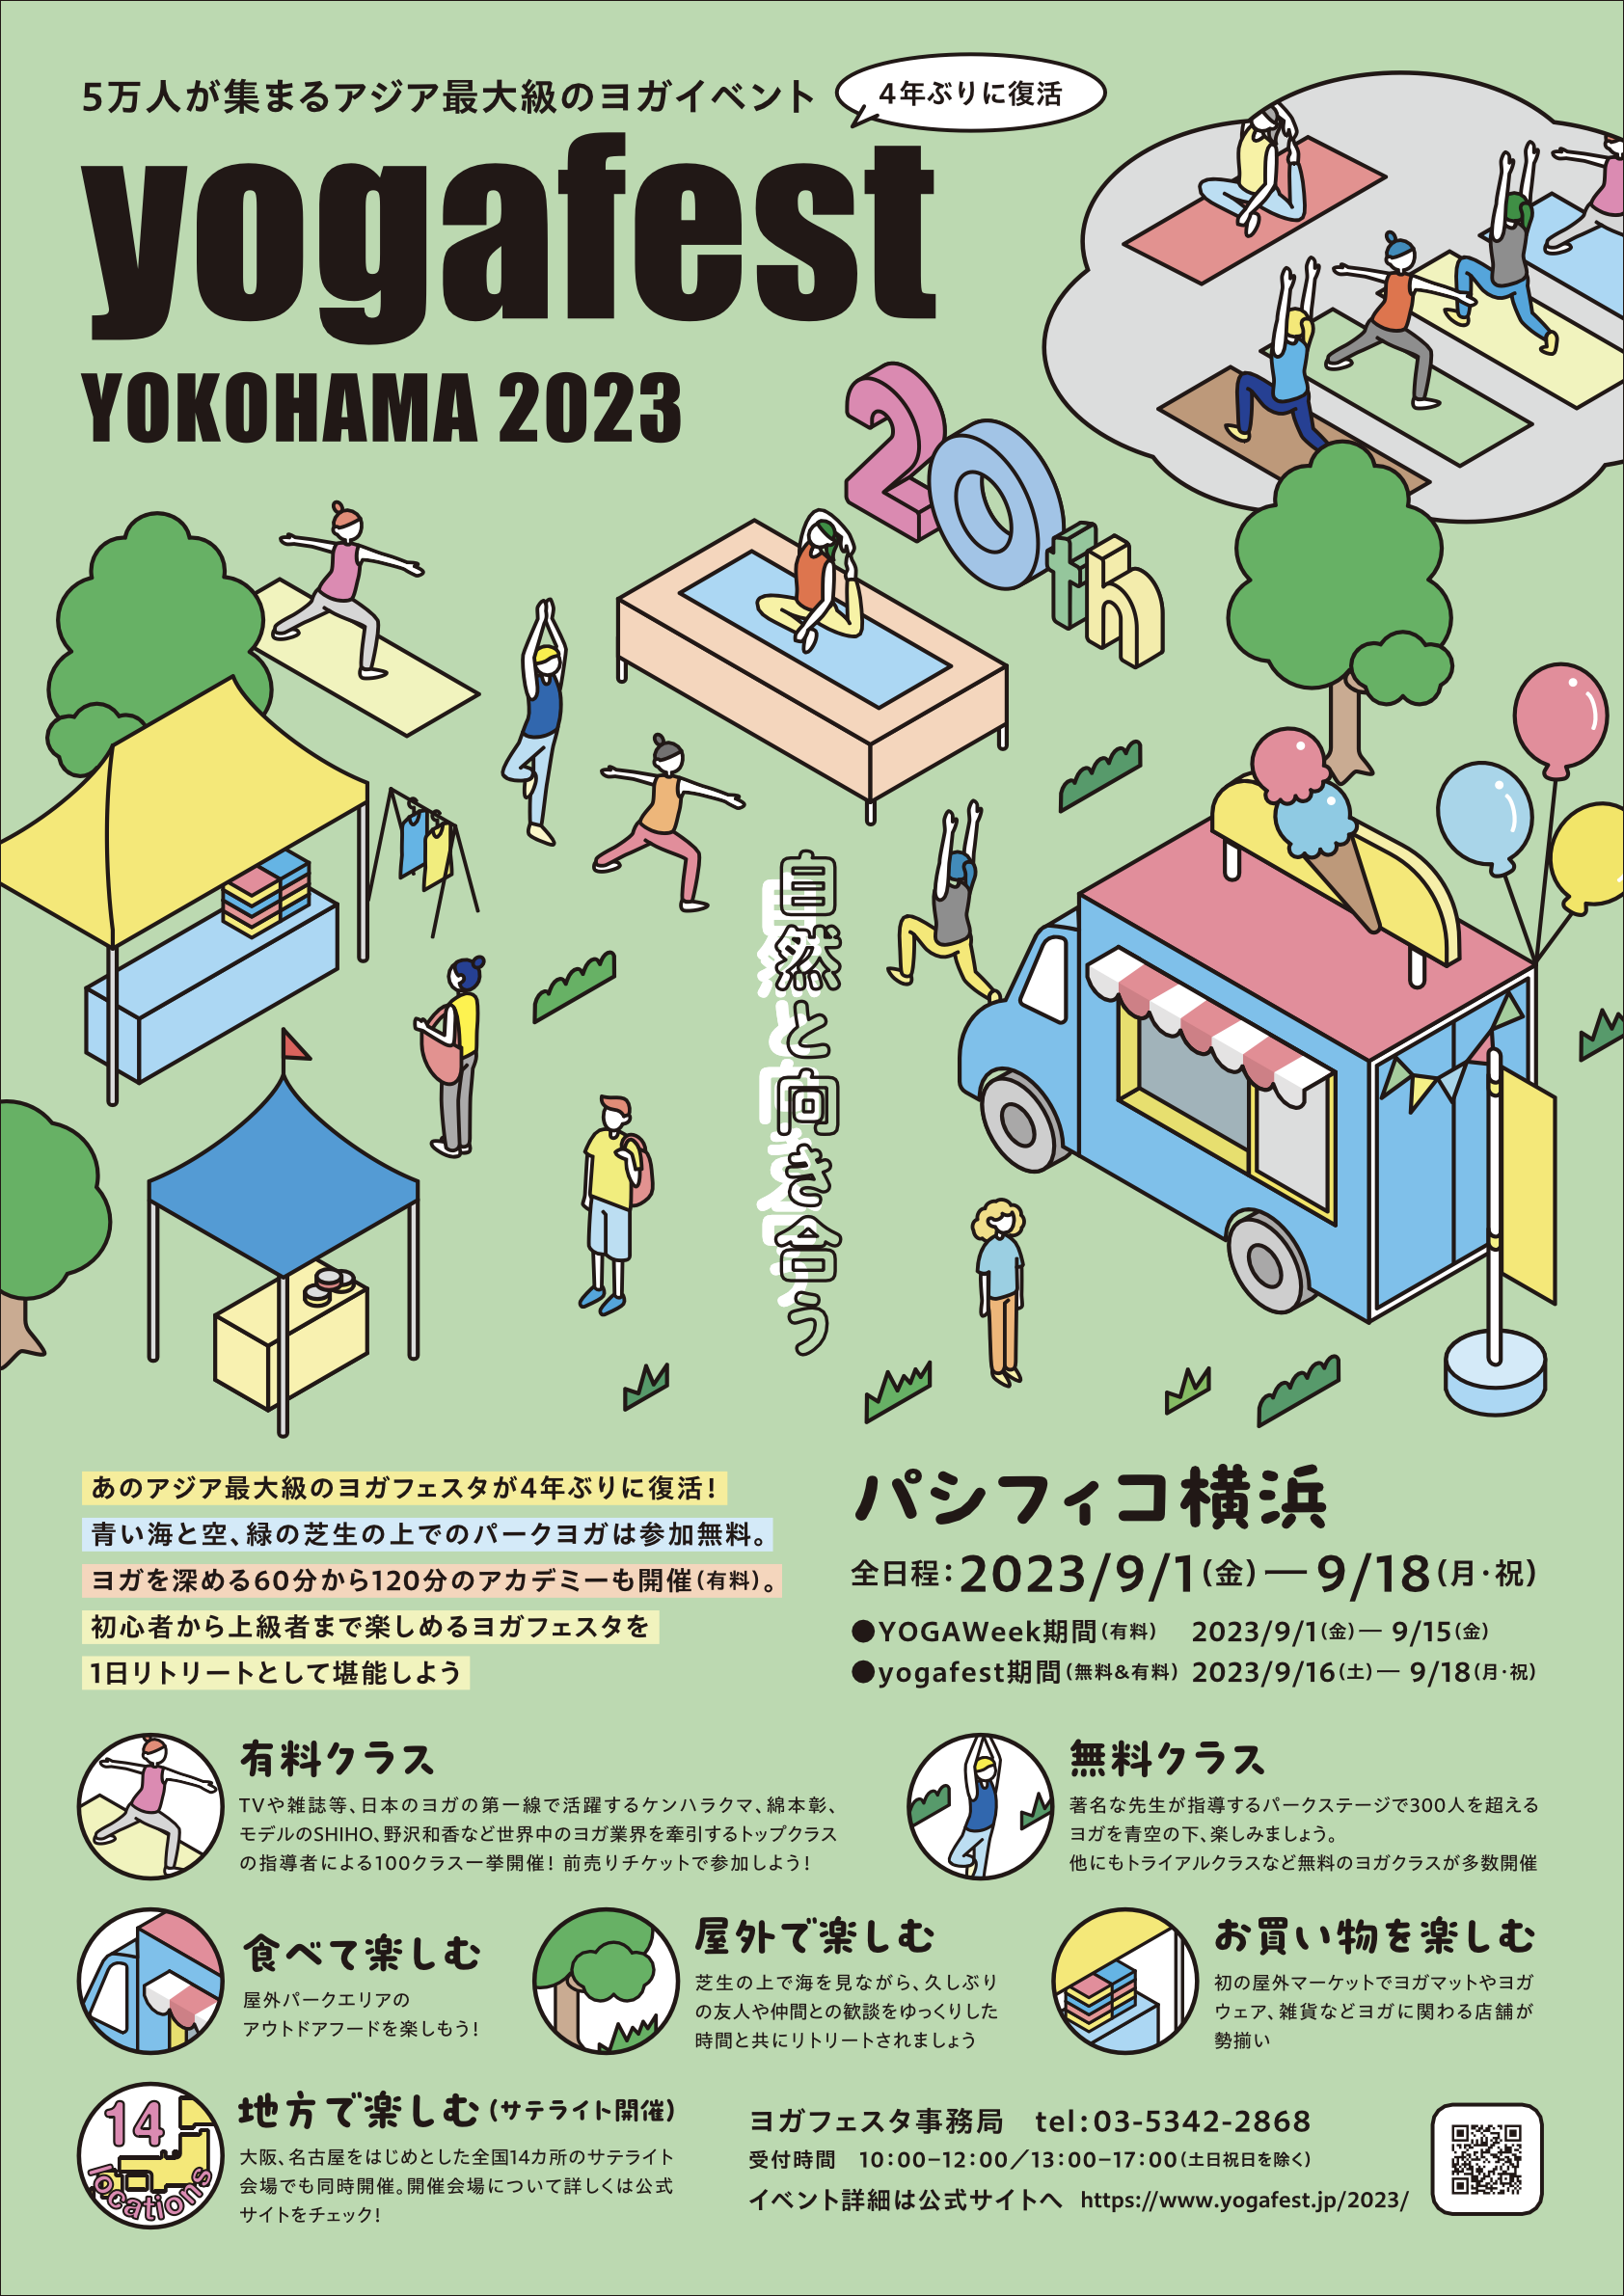 【東京芸術祭 2023】キービジュアル解禁、特設サイトオープンのお知らせ